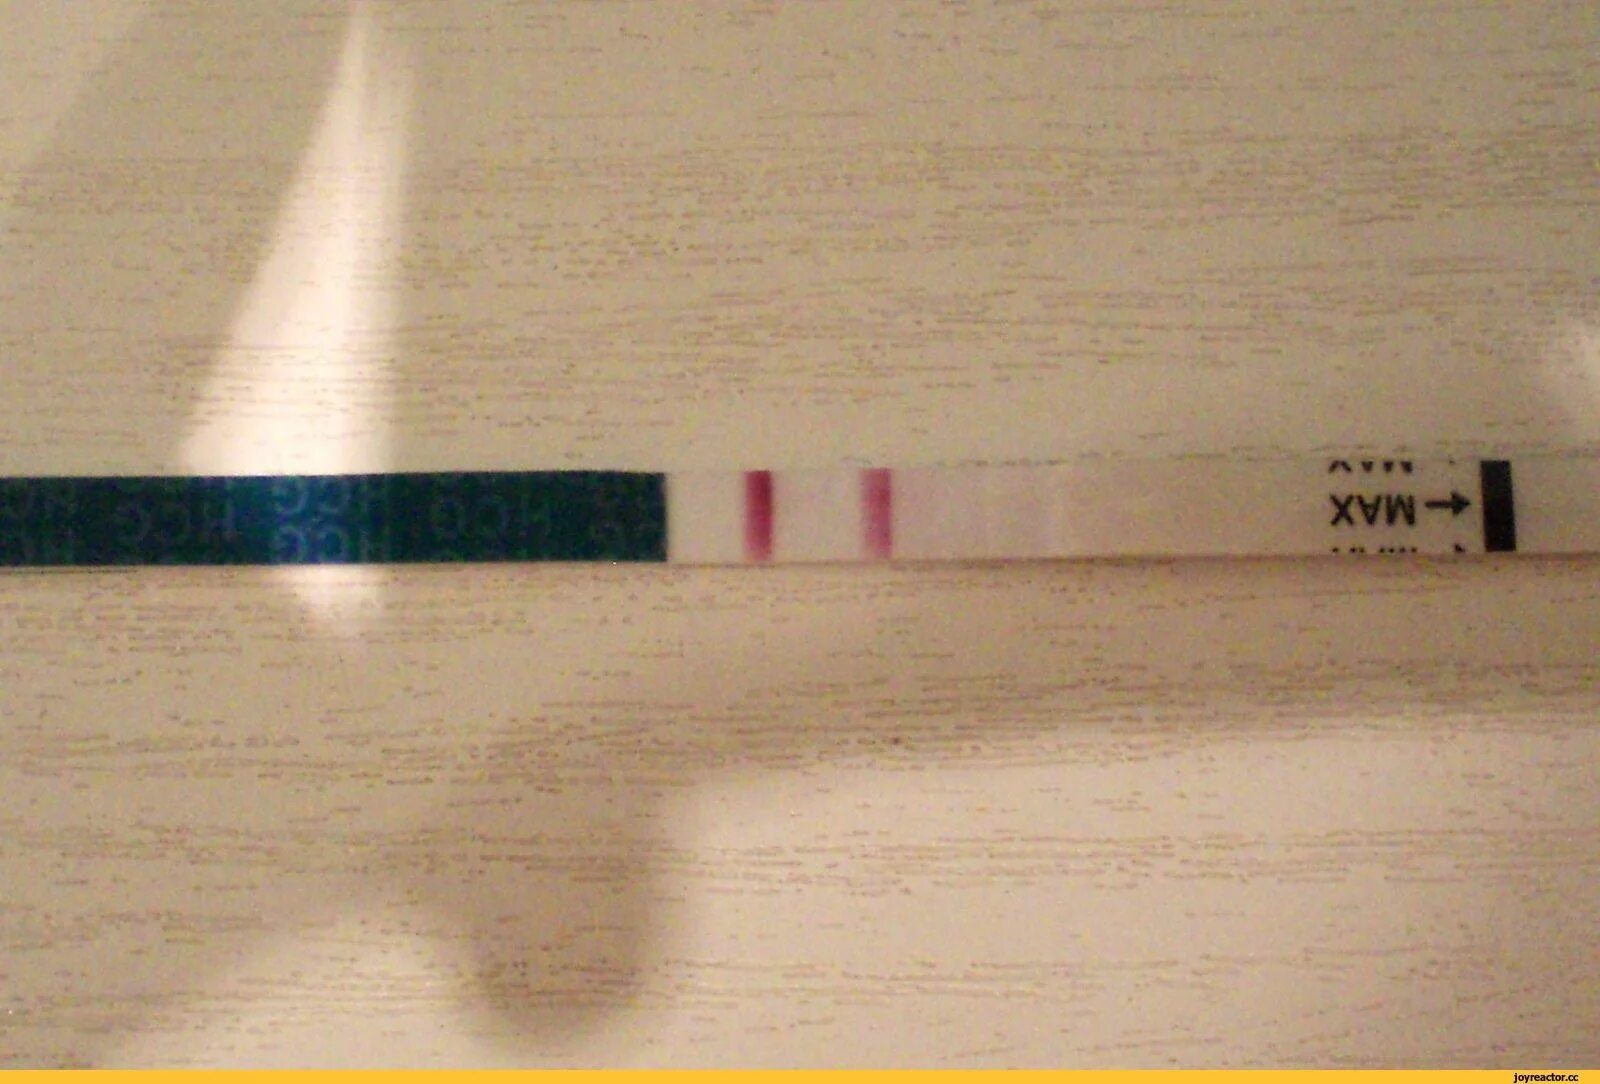 Положительный тест на беременность как выглядит фото. Тест на беременность 2 poloska. Тест на беременность с 2 тест полосками. Тест на беременность 2 полоски фото. Тест на беременность 2 полосочки.